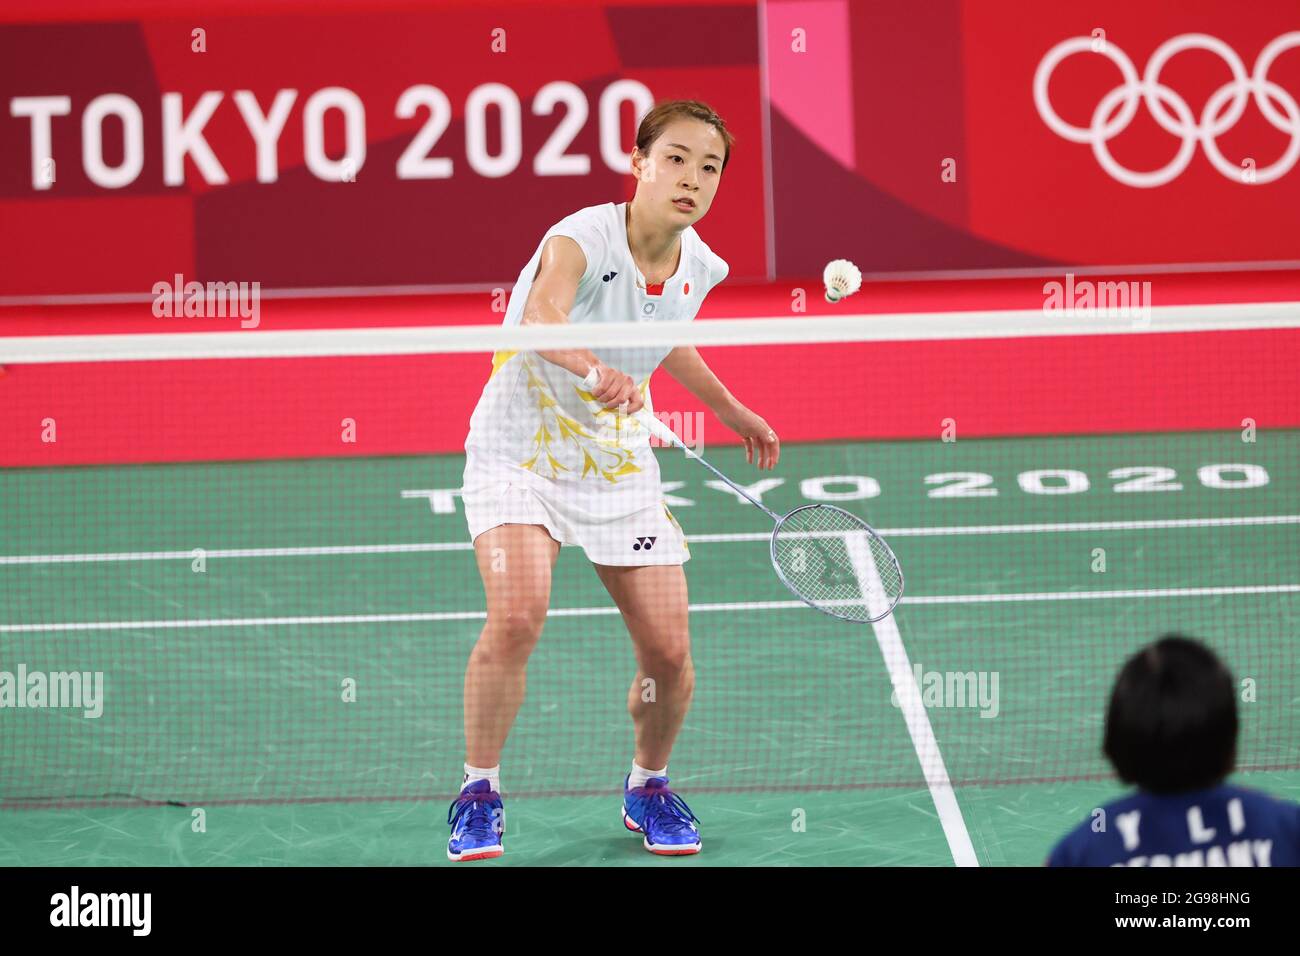 Tokyo 2020 live badminton